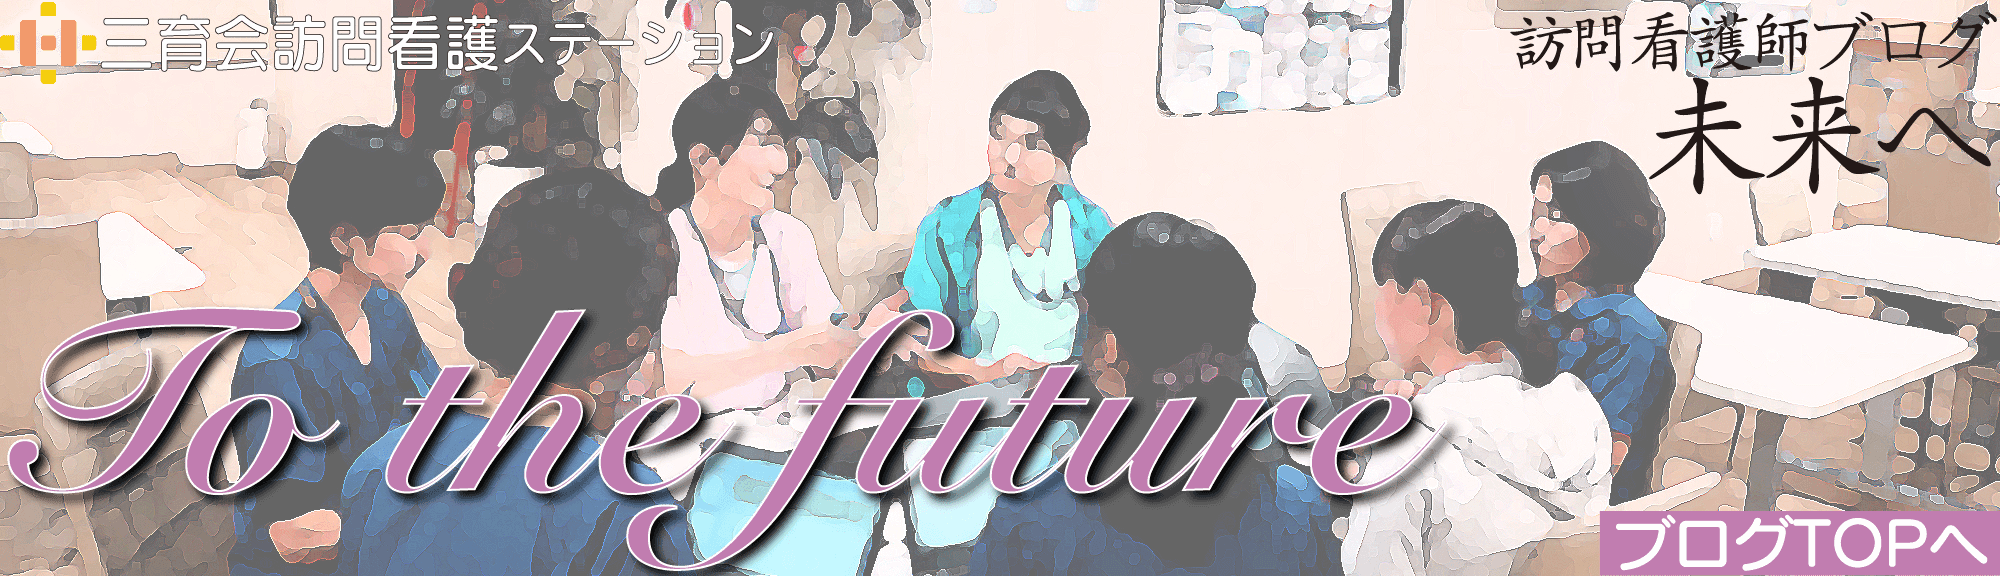 訪問看護師ブログ 未来へ To the future